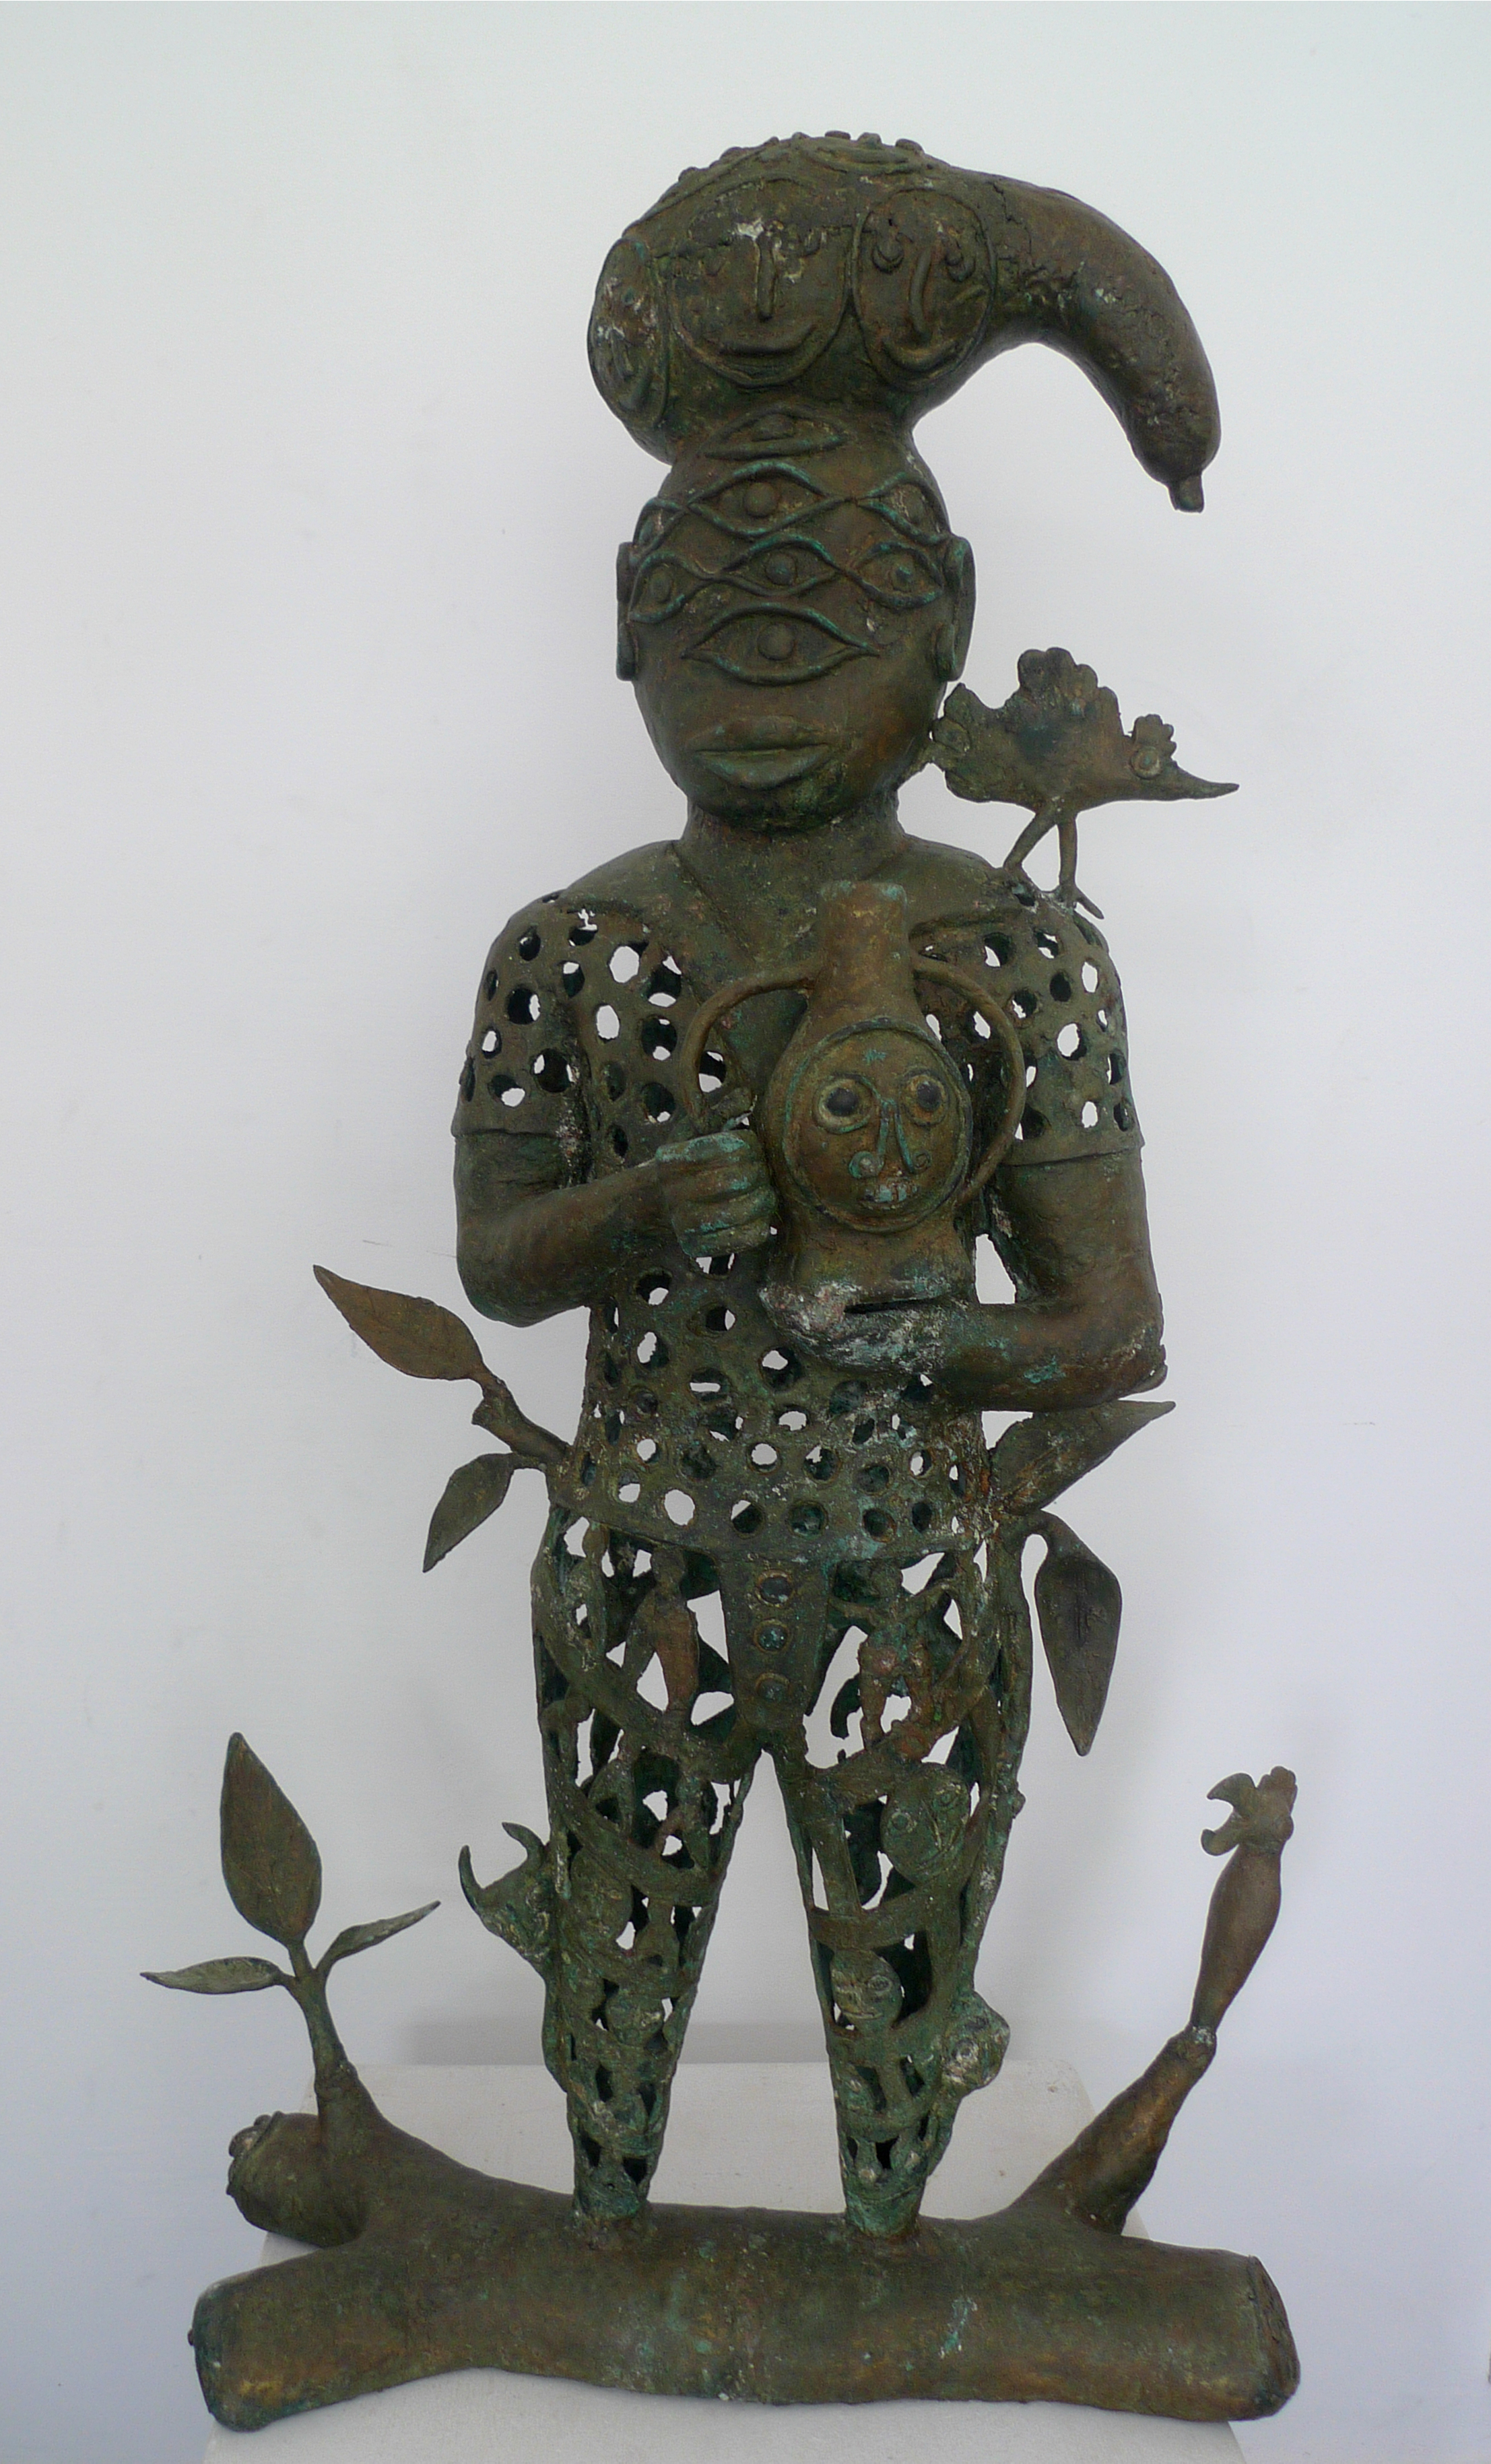 Le roi, 100cm x 64cm x 22cm, sculpture bronze, 2016